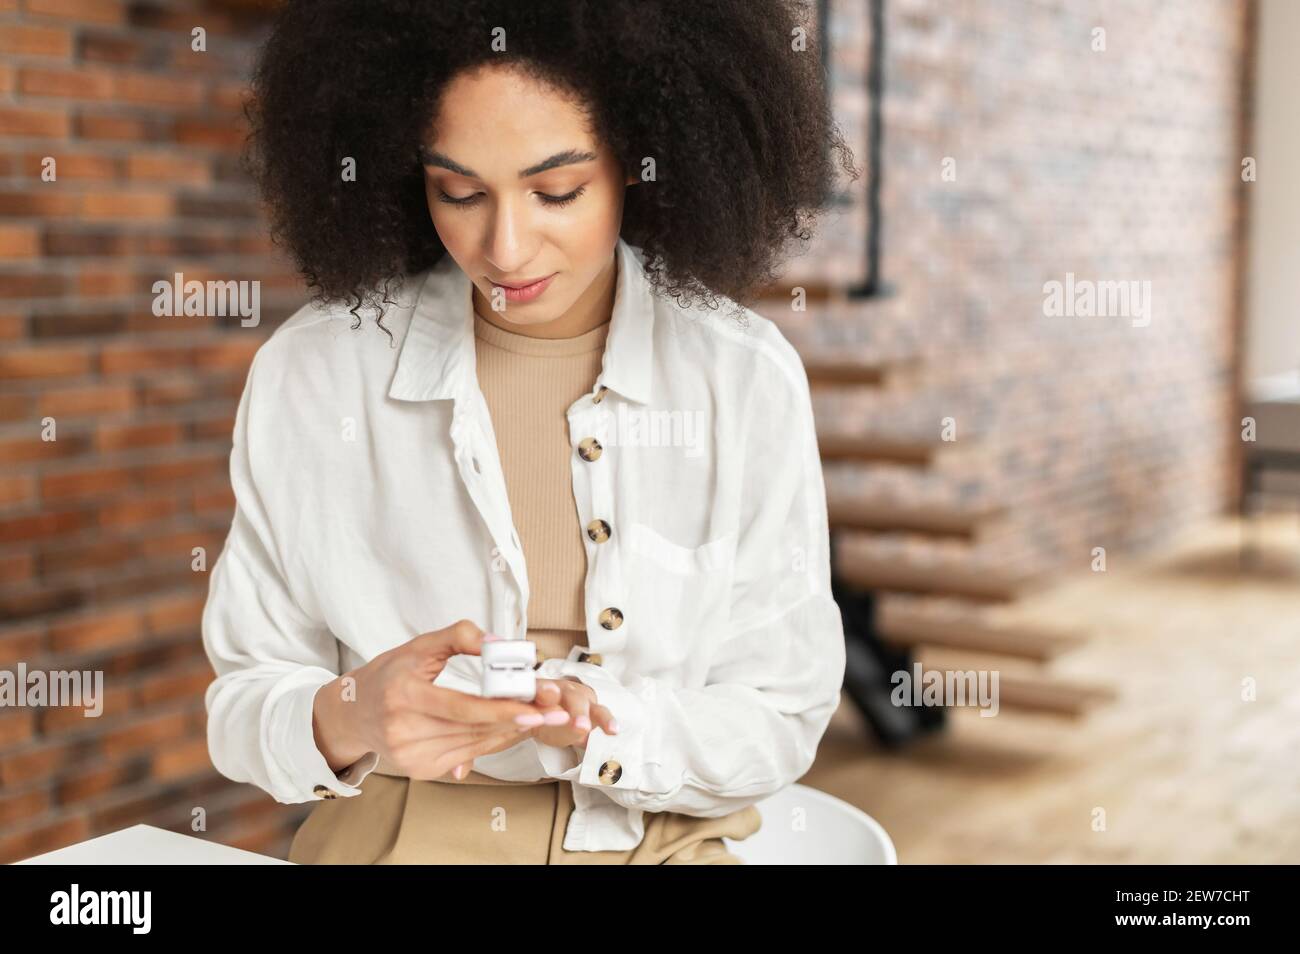 Porträt der stilvollen jungen afroamerikanischen Frau stehend und Messung des Sauerstoffgehalts des Blutes mit tragbaren Gerät Pulsoximeter, Gefühl schwindelig Überwachung Überprüfung ihres Zustandes zu Hause Stockfoto